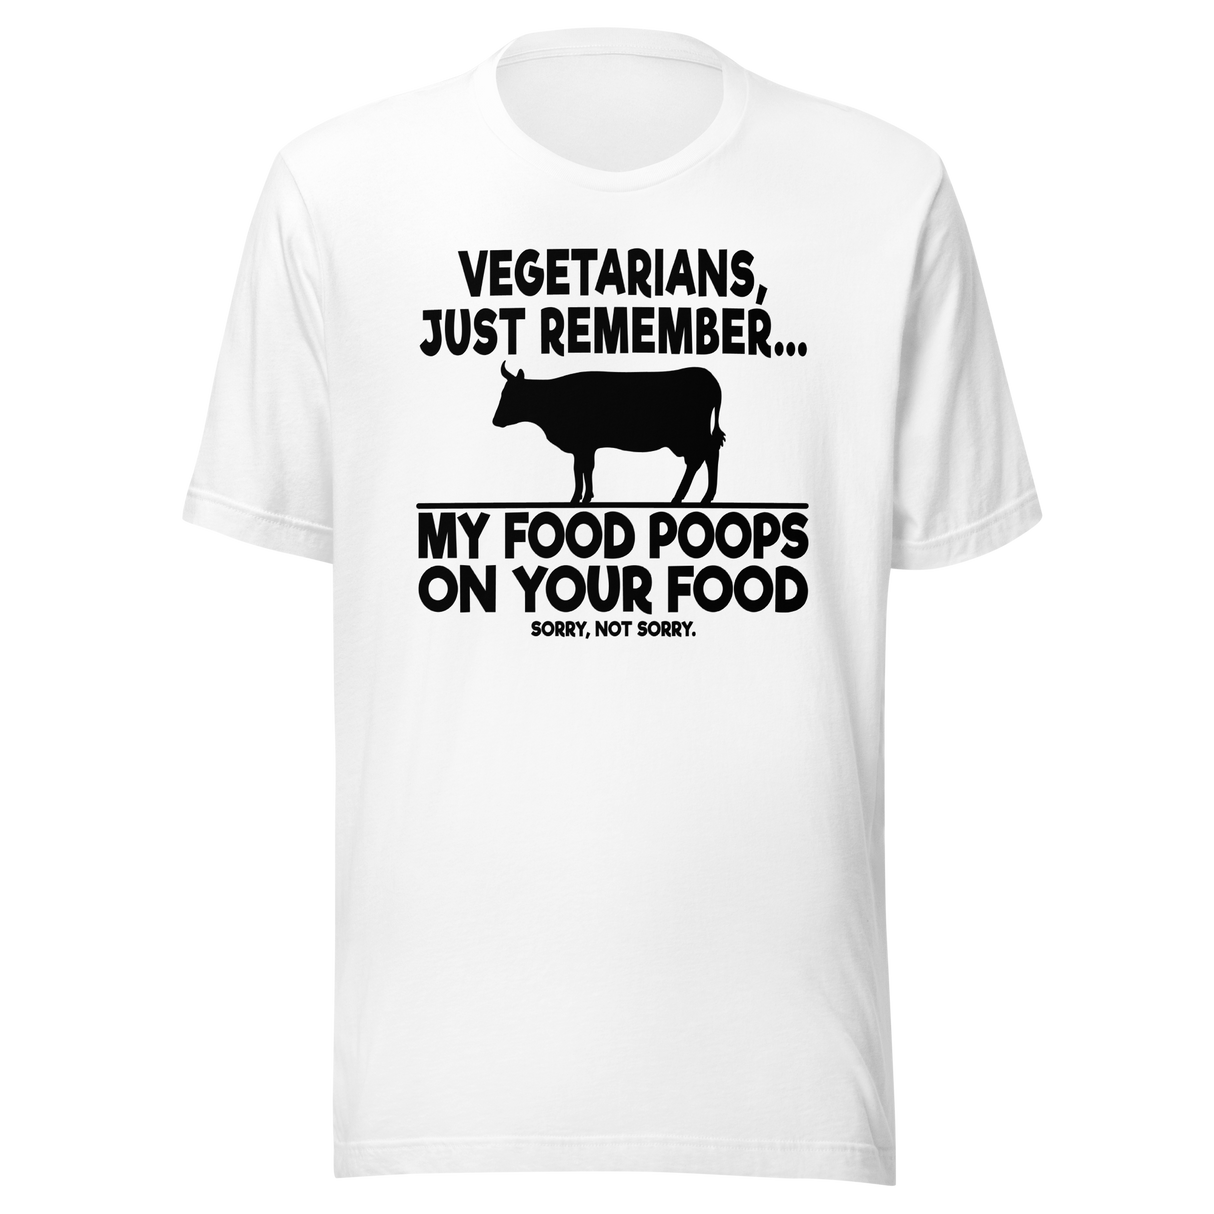 vegetarians-just-remember-my-food-poops-on-your-food-food-tee-humor-t-shirt-foodie-tee-vegetarian-t-shirt-carnivore-tee#color_white